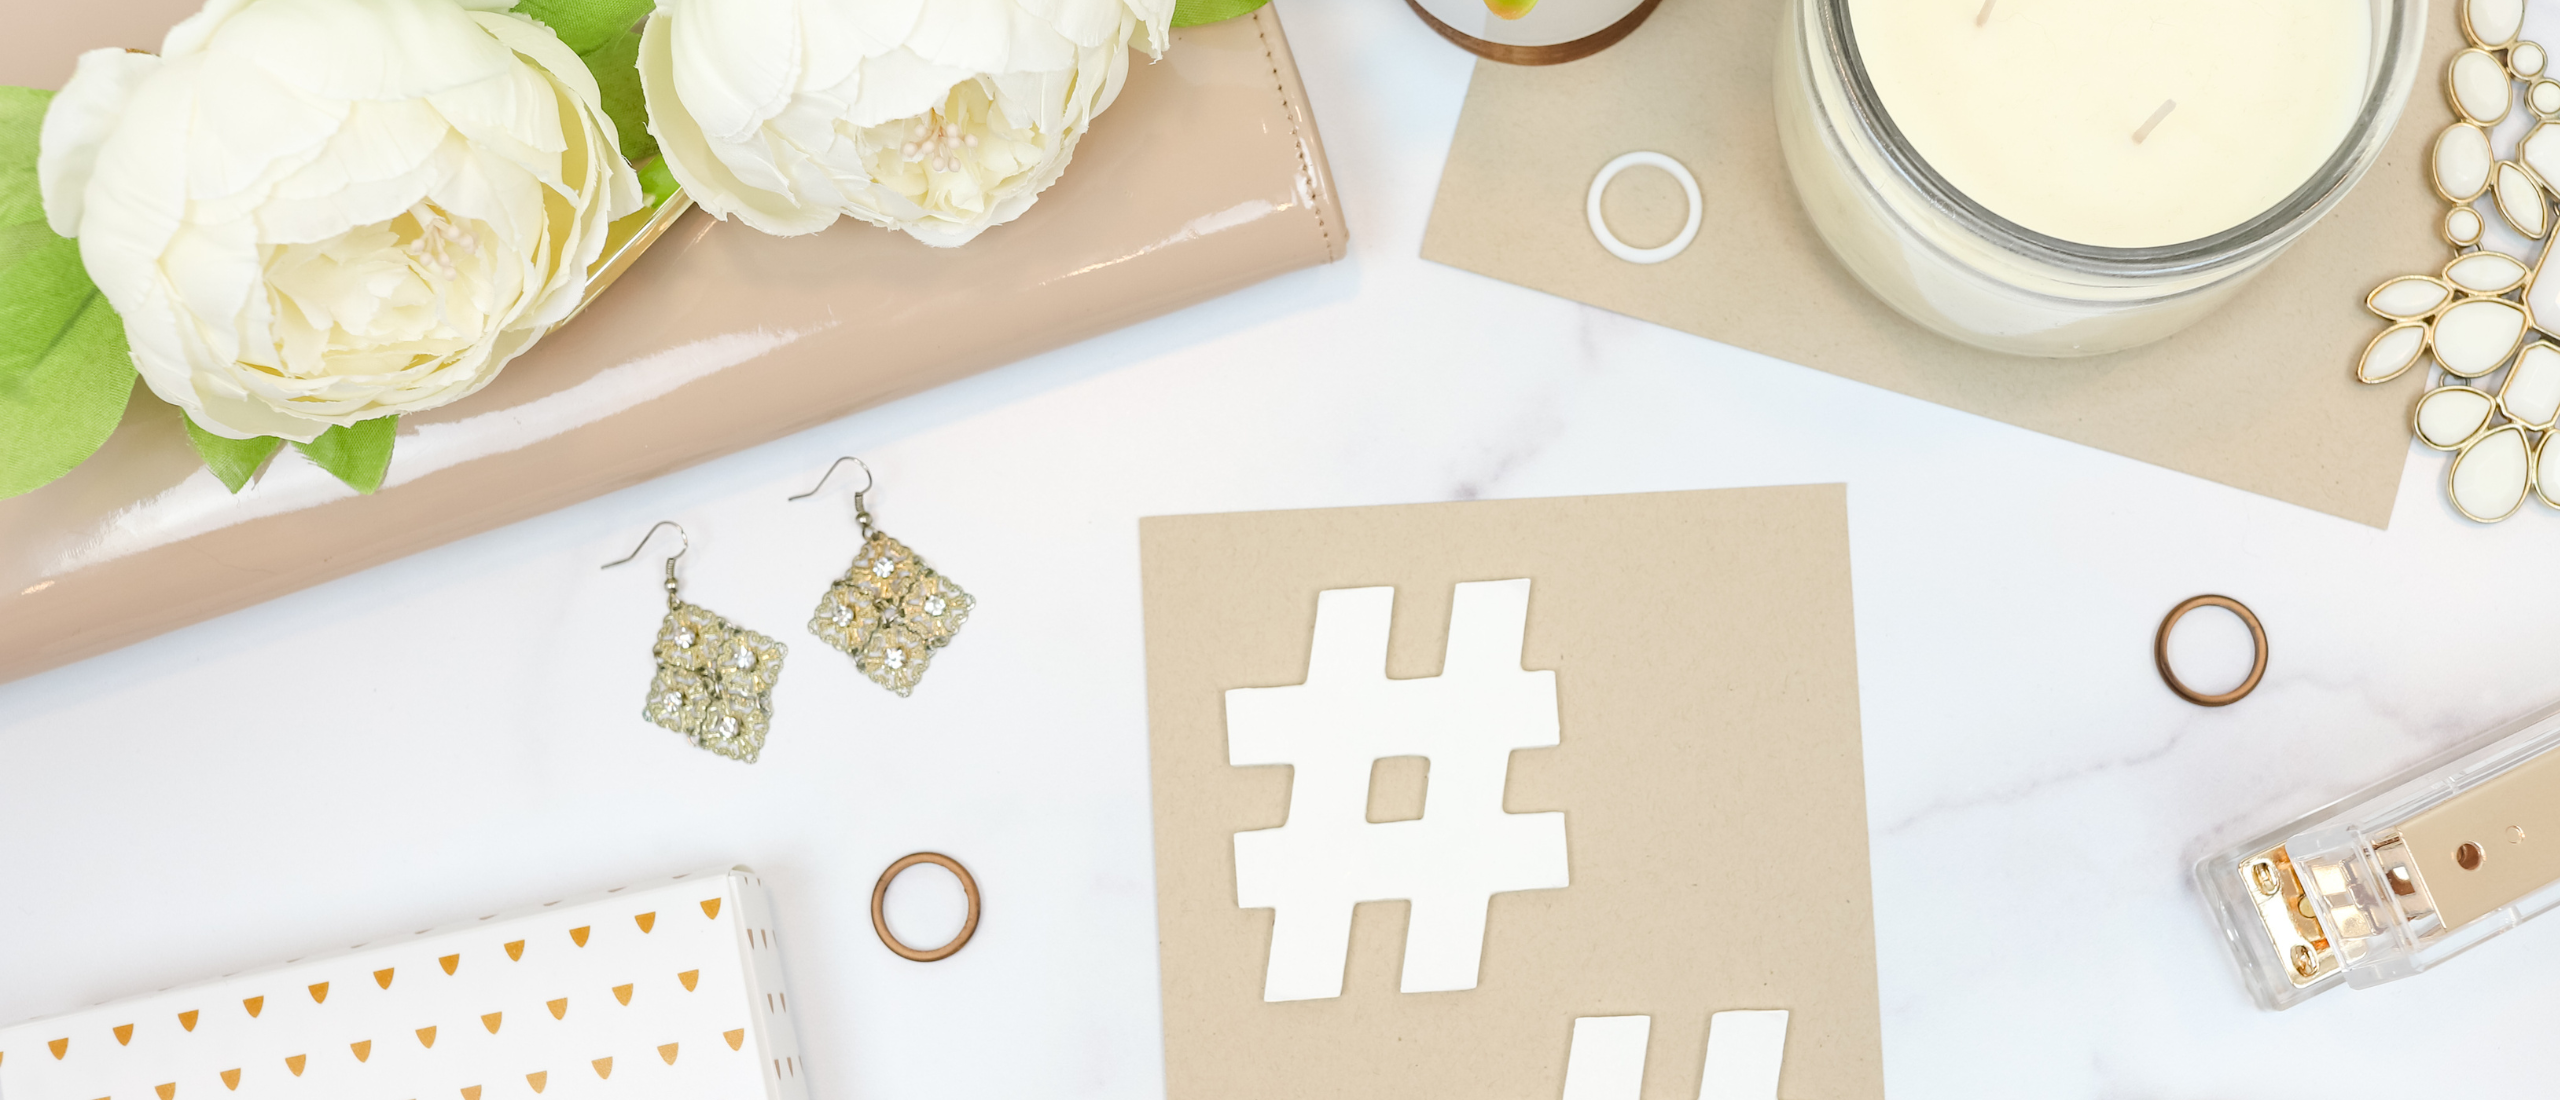 Social Media: Hoe werken hashtags?